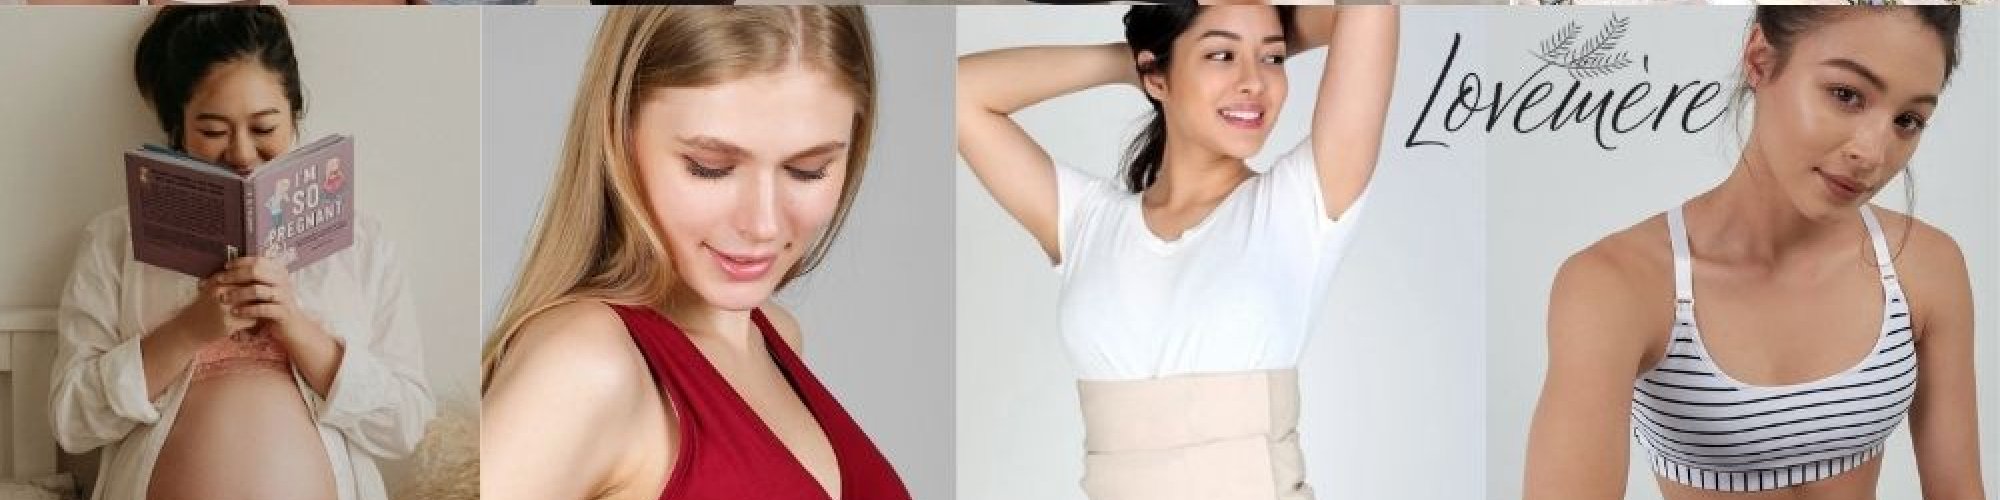 Best Bra to Wear During Pregnancy - Nursing Bralette - Lovemere, Singapore